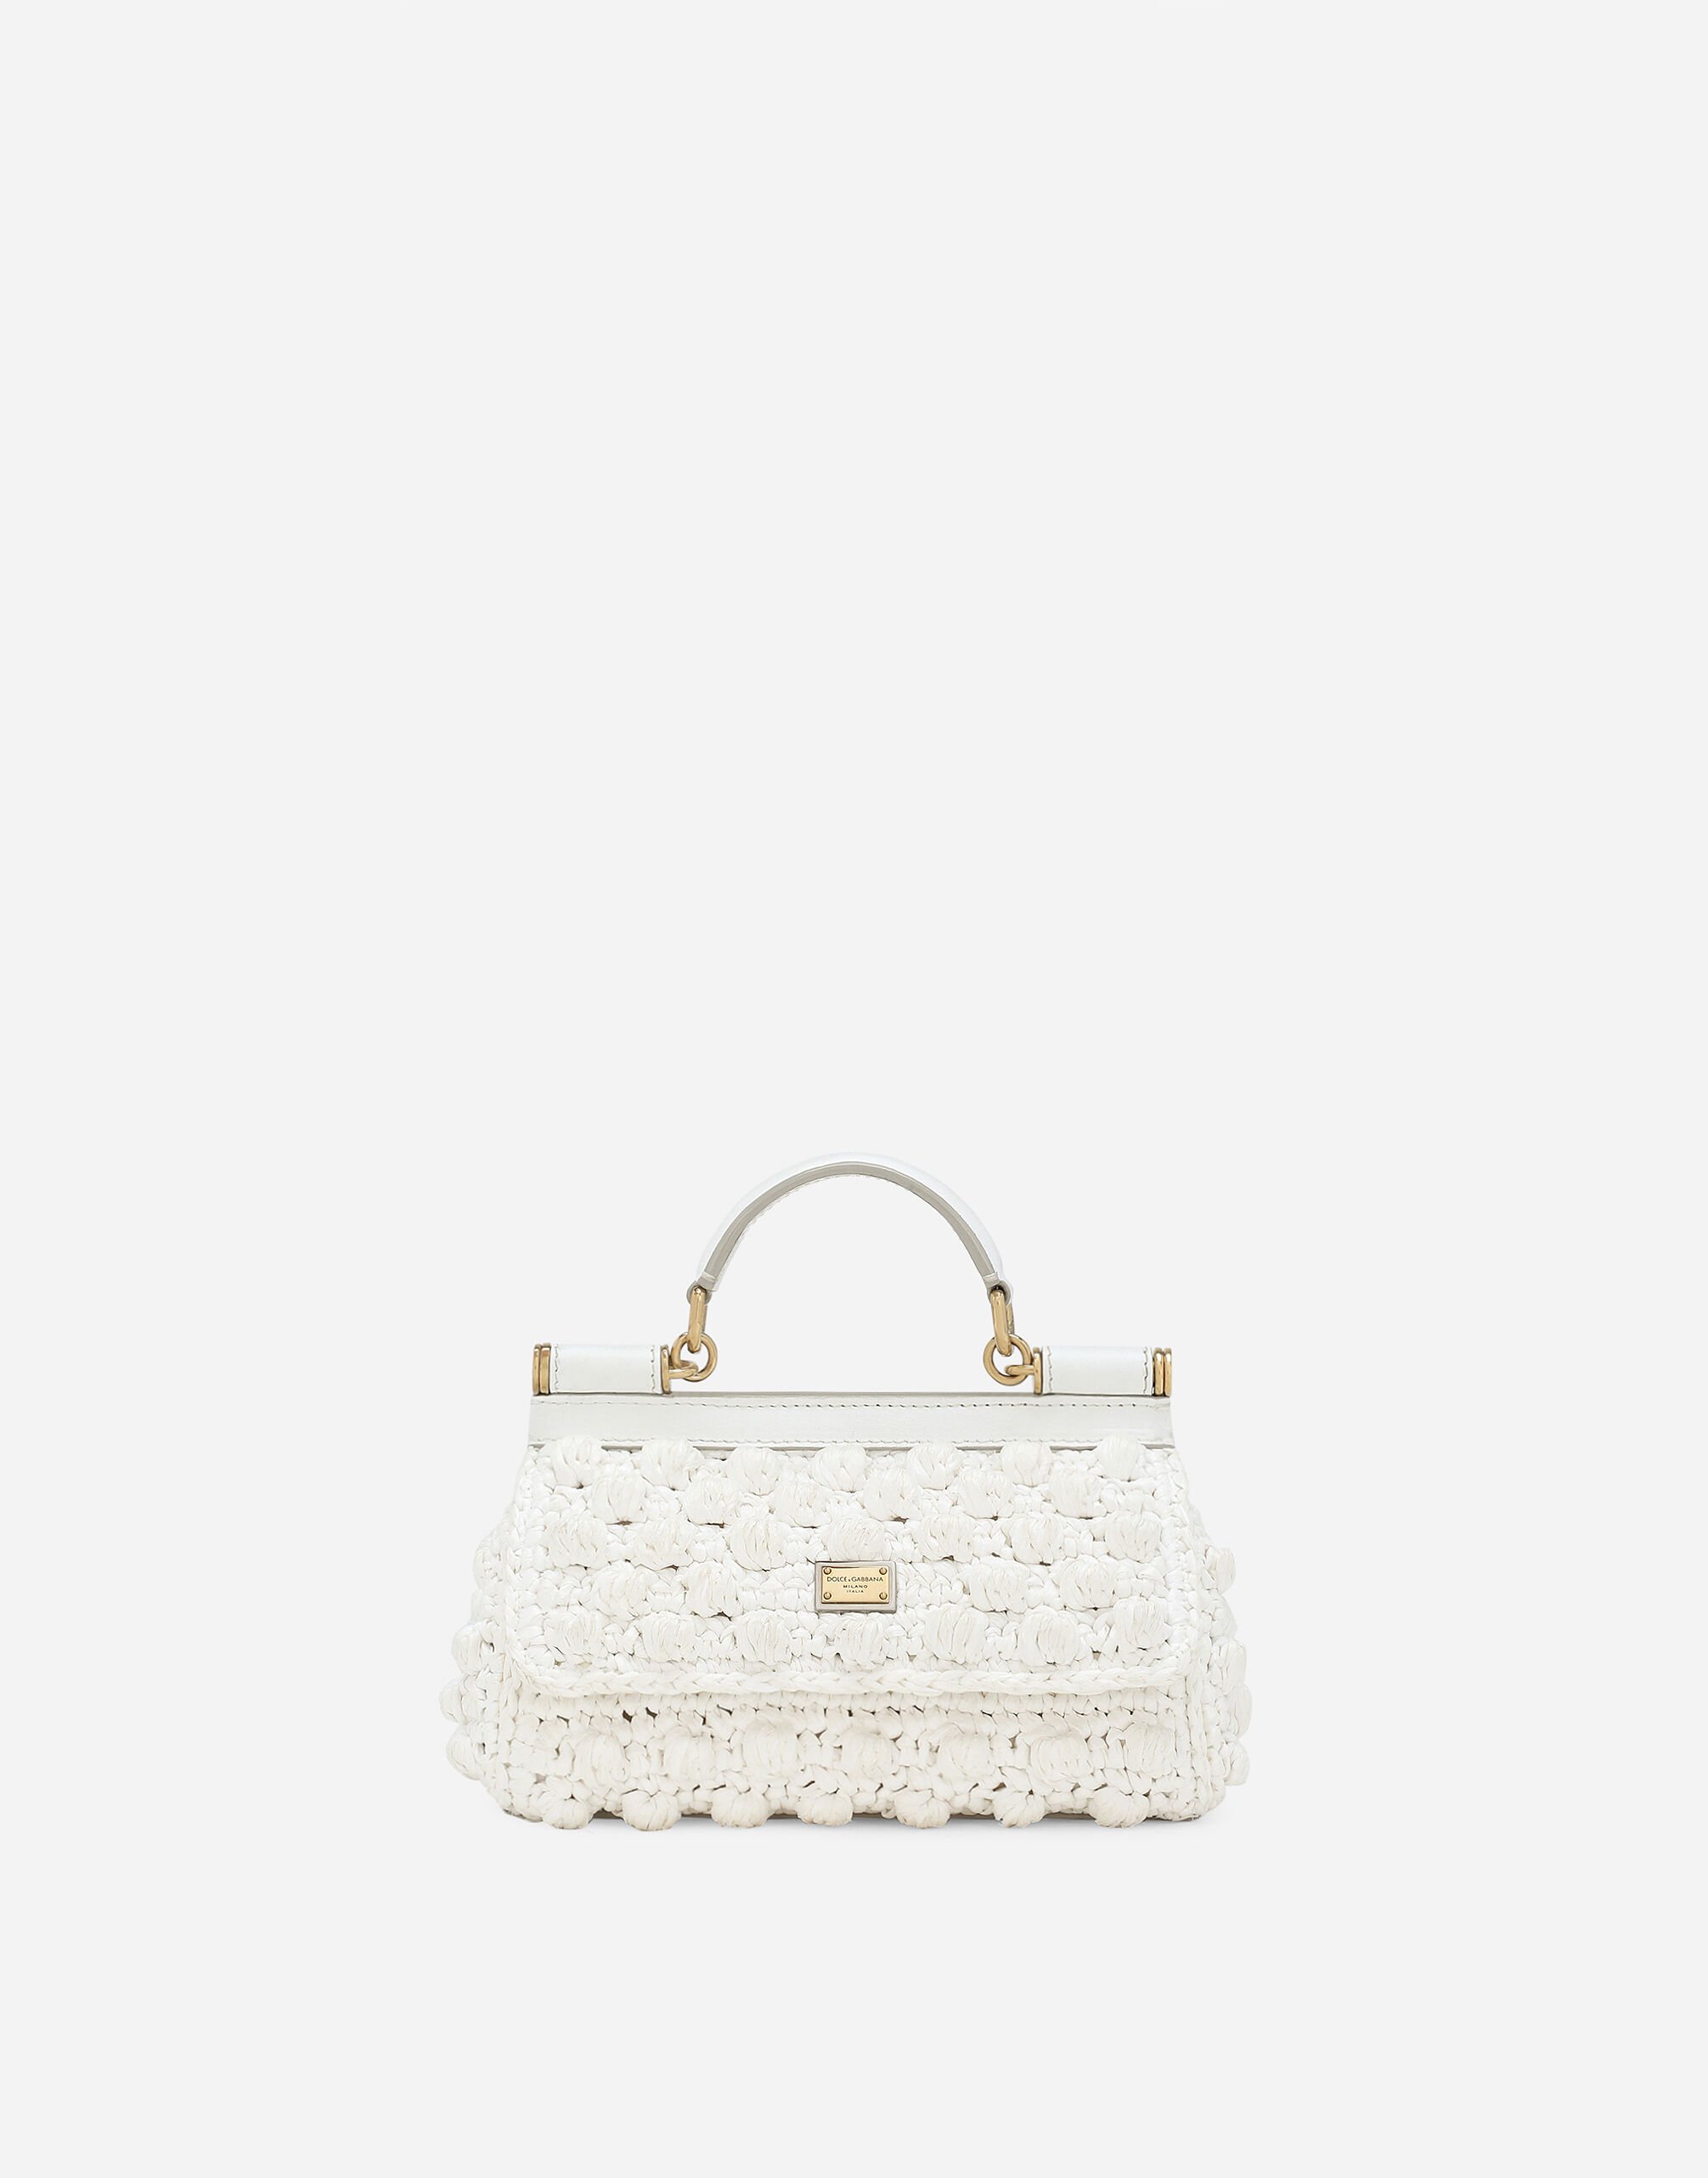 Dolce & Gabbana حقيبة سيسيلي كروشيه صغيرة من الرافية متعدد الألوان BB6002A2Y84